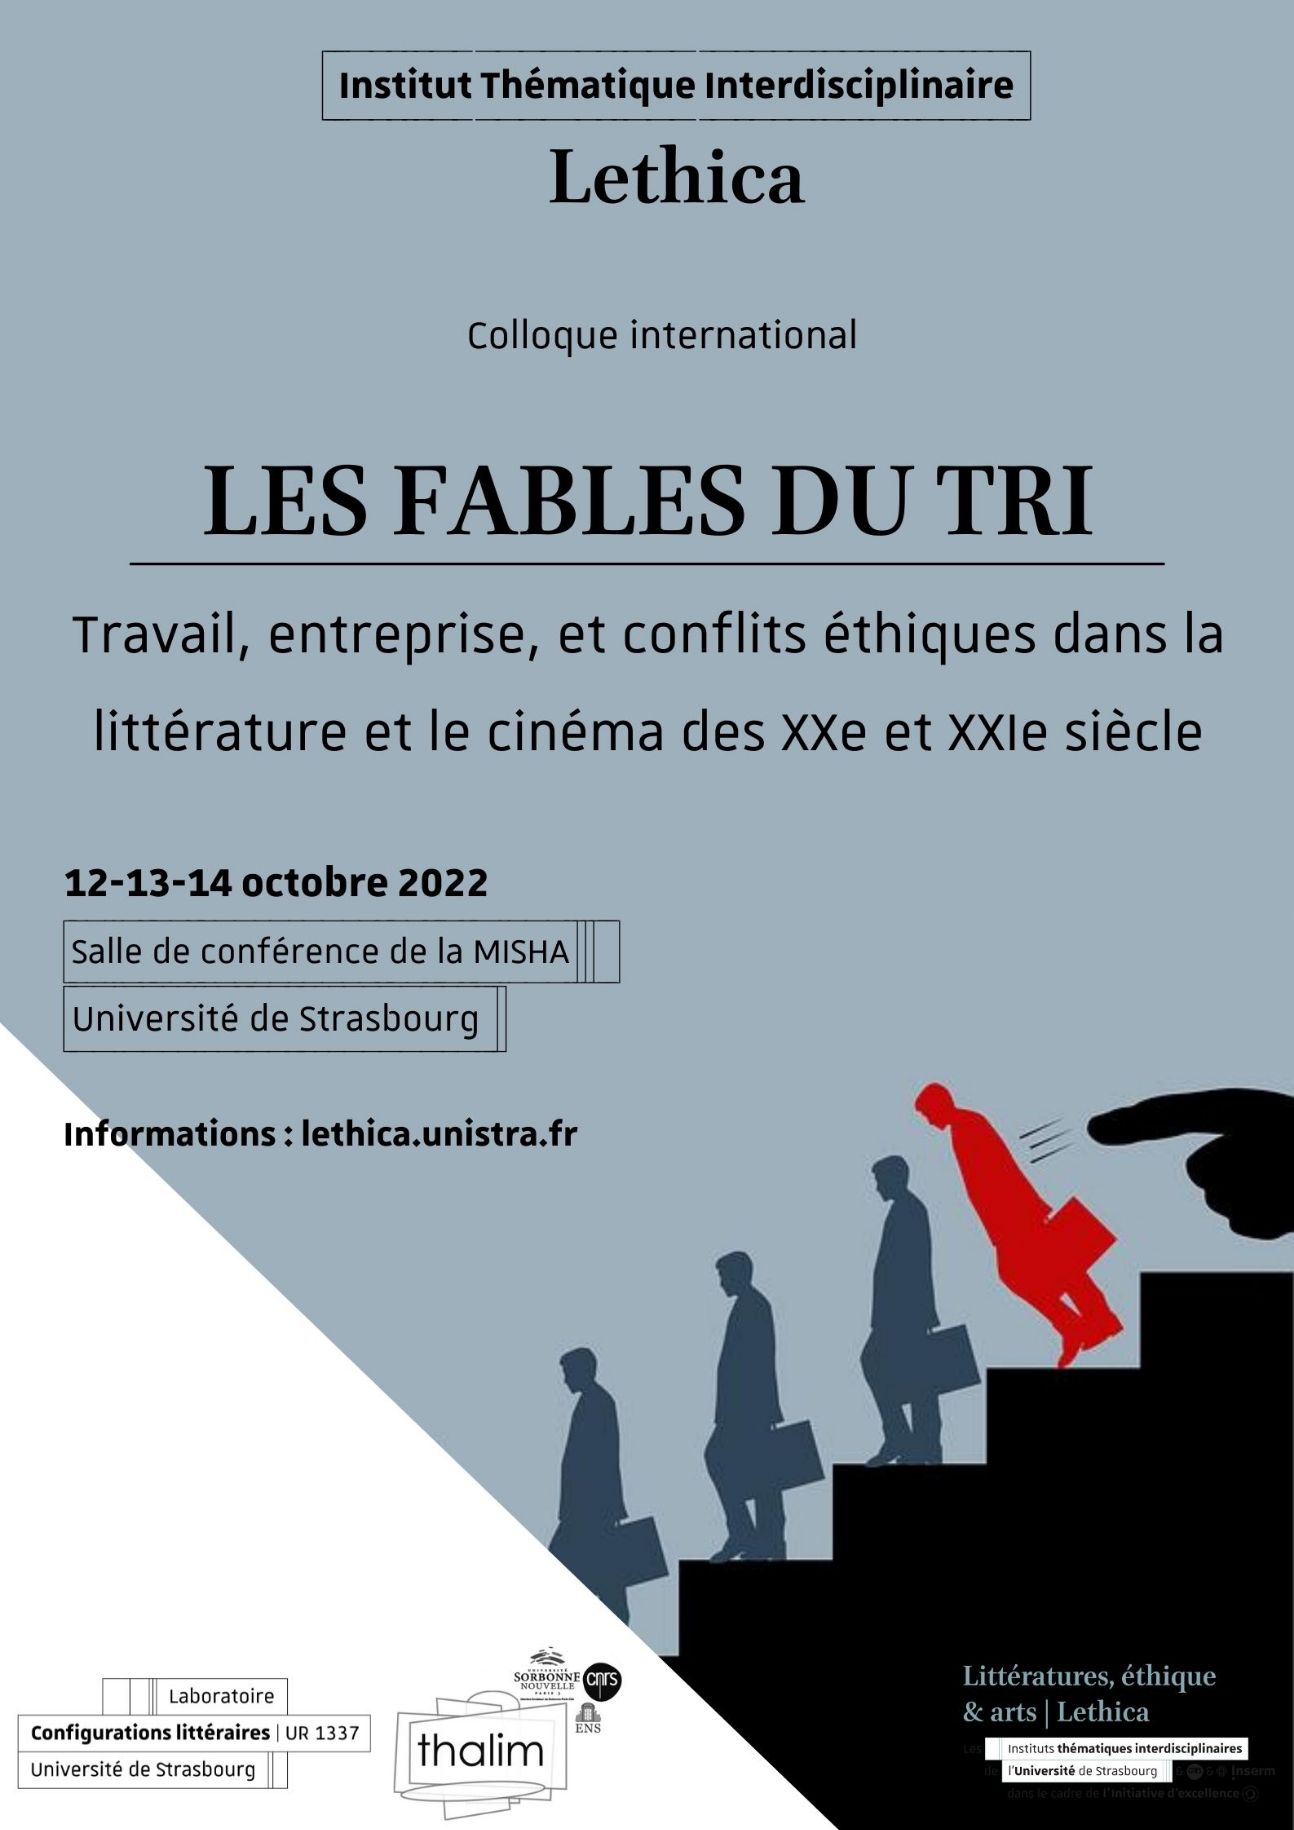 Les fables du tri : travail, entreprise, et conflits éthiques dans la littérature et le cinéma des XXe-XXIe s (Strasbourg)